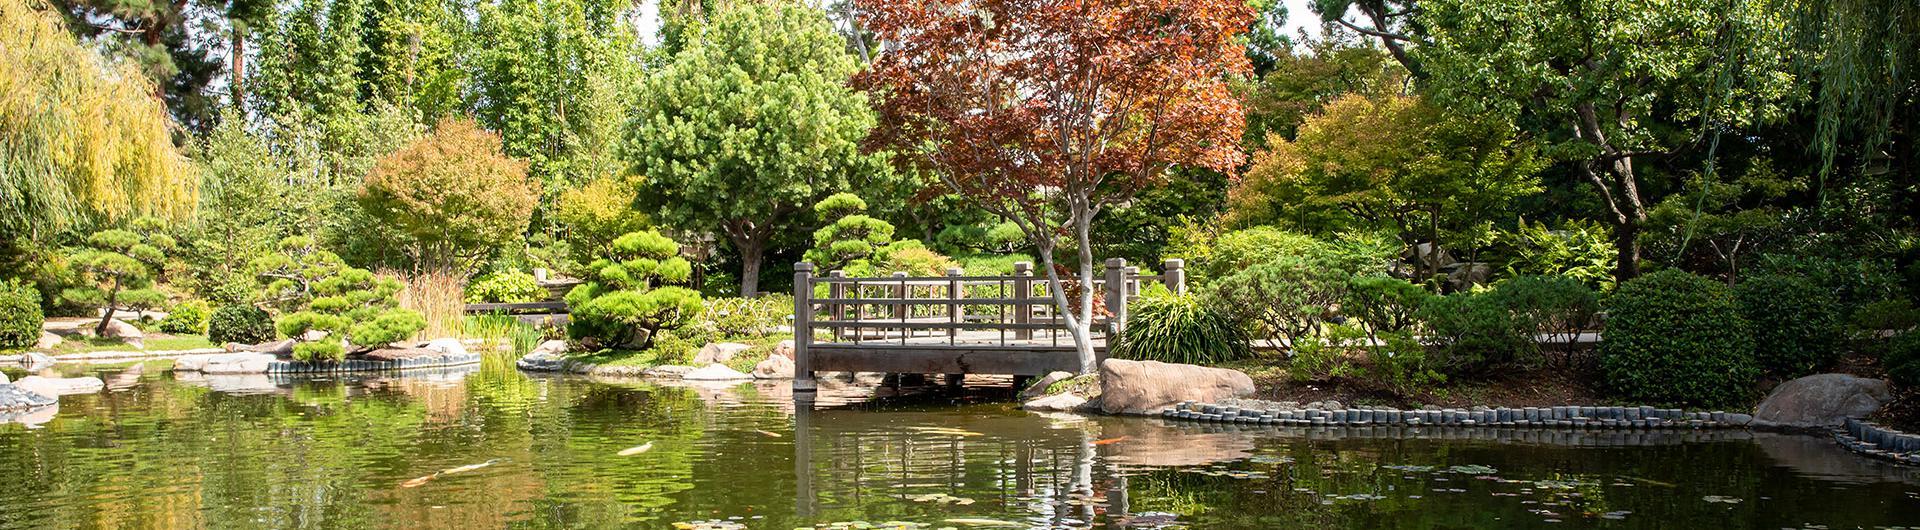 日本花园池塘和桥的照片